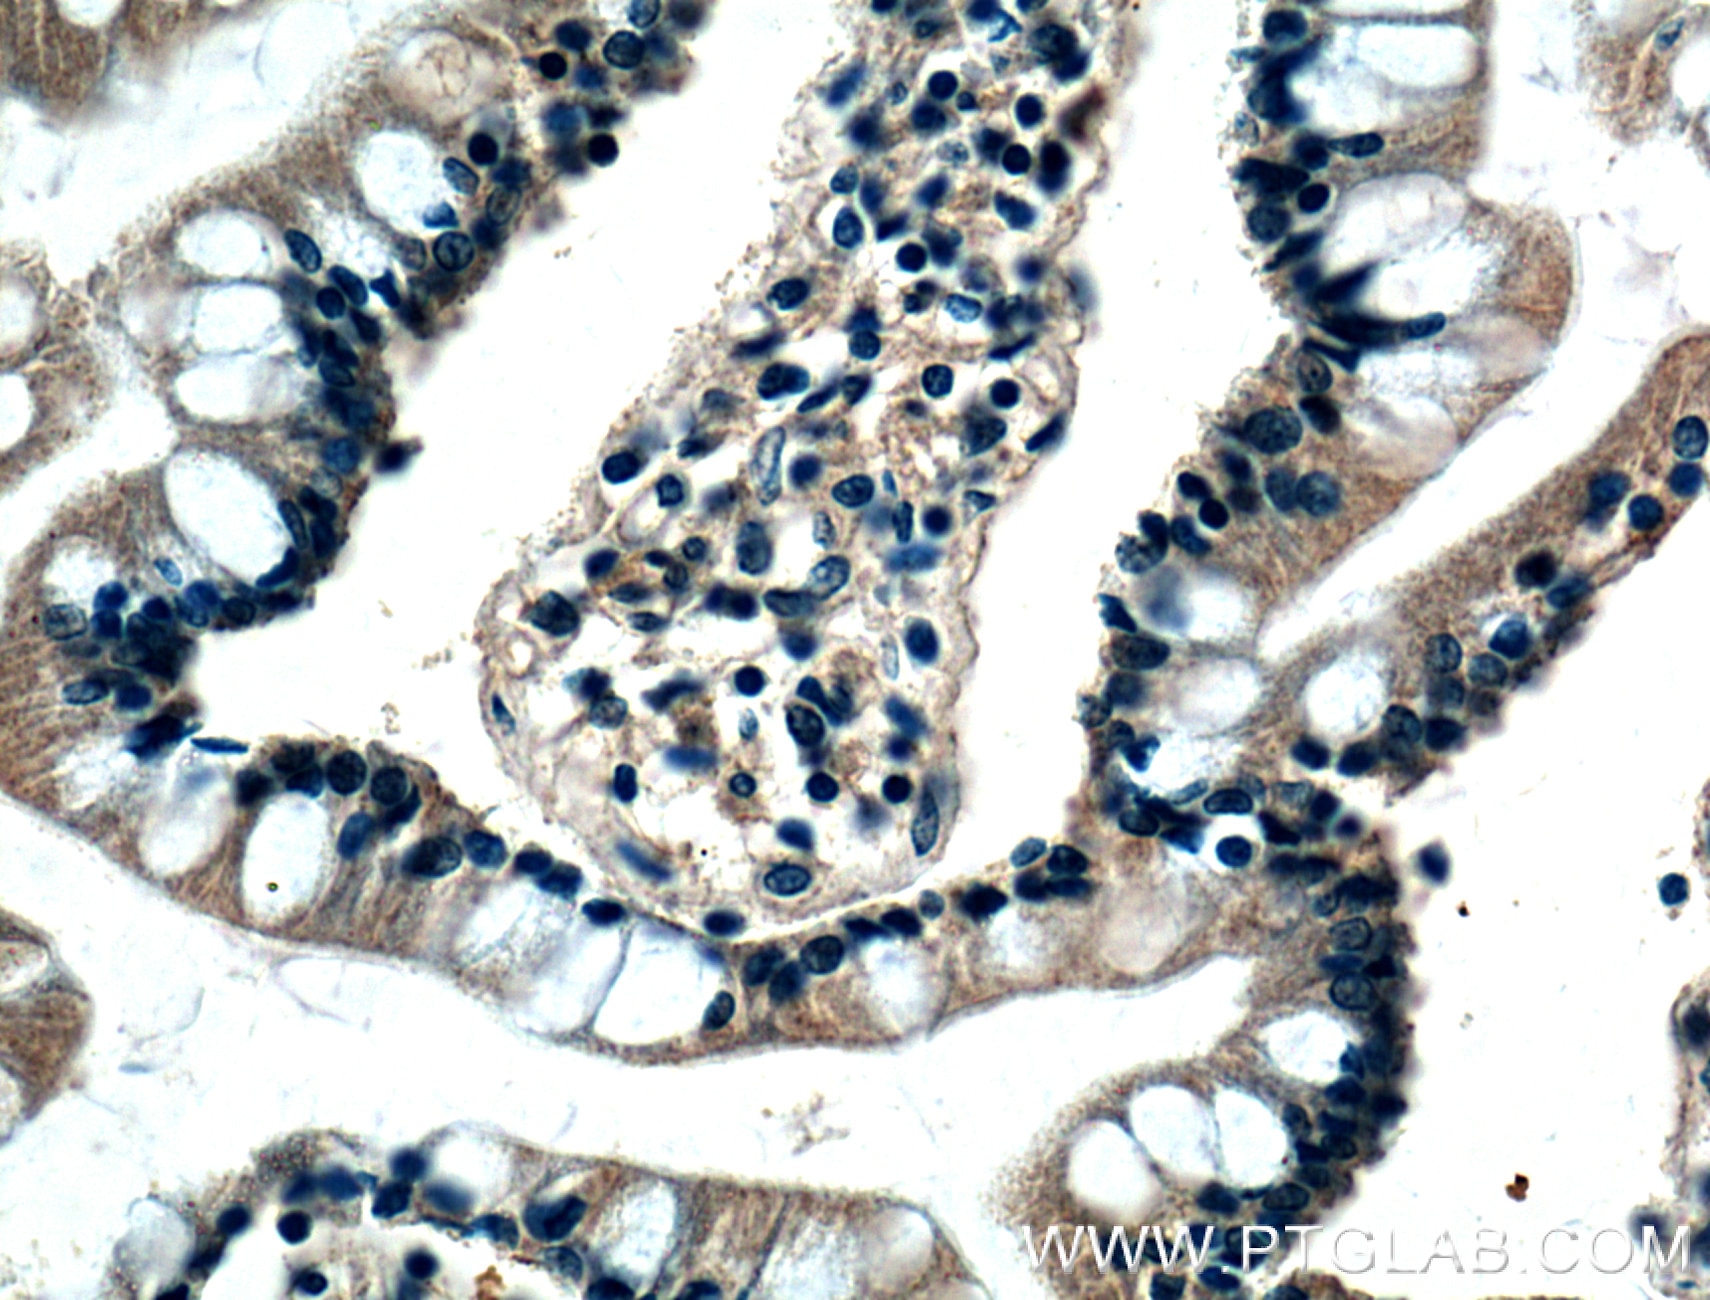 Immunohistochemistry (IHC) staining of human small intestine tissue using BMP2 Monoclonal antibody (66383-1-Ig)